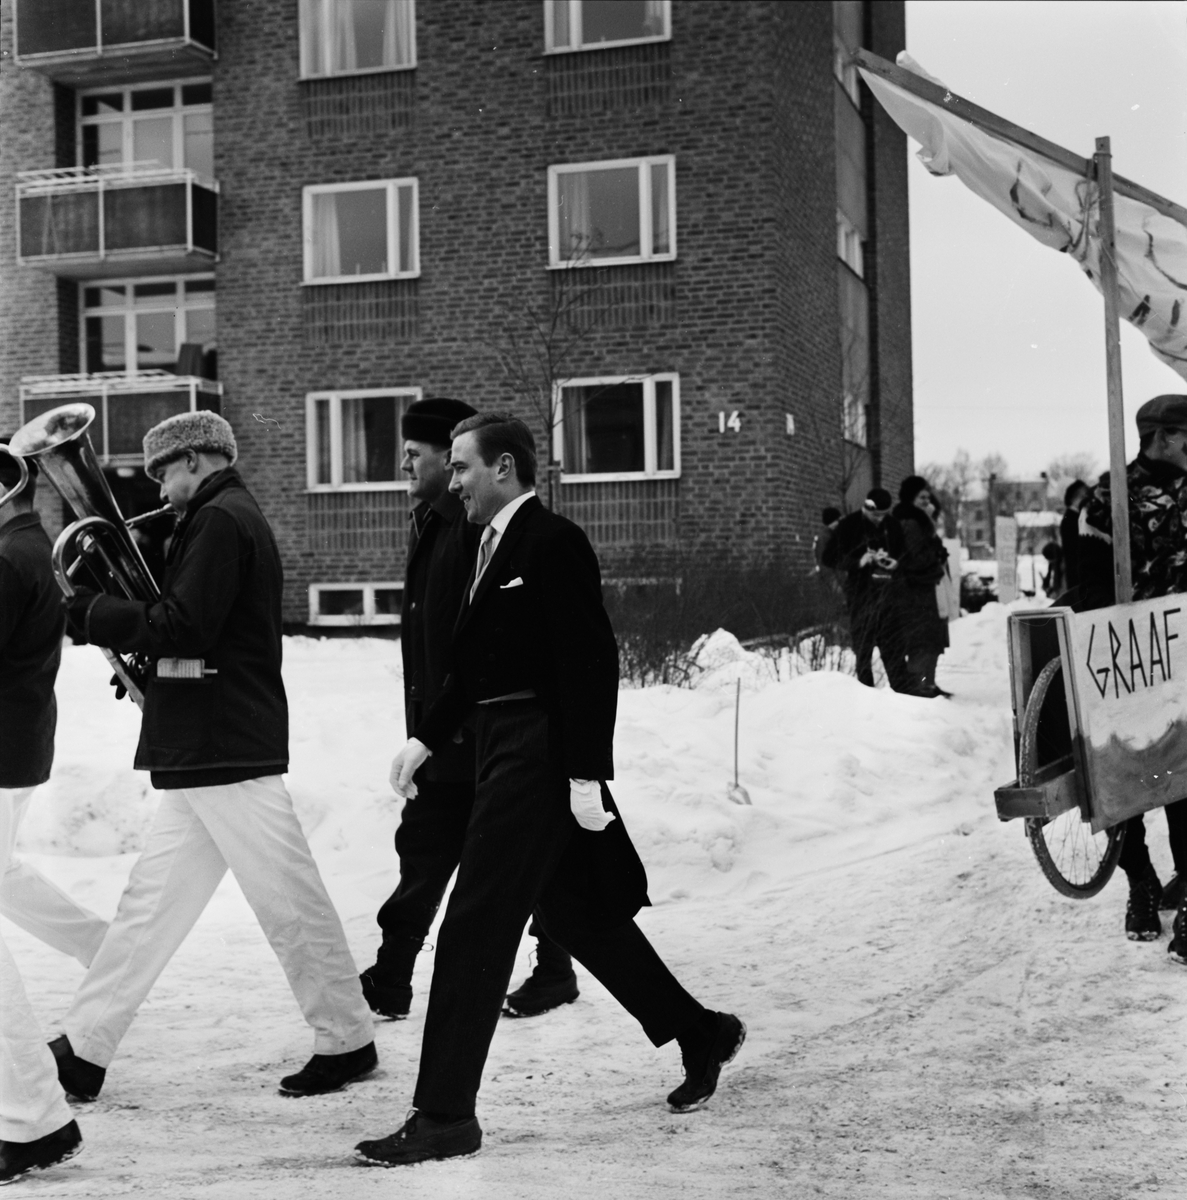 Studentliv - "Birkarlarenneth blev seger i snö", Uppsala 1963